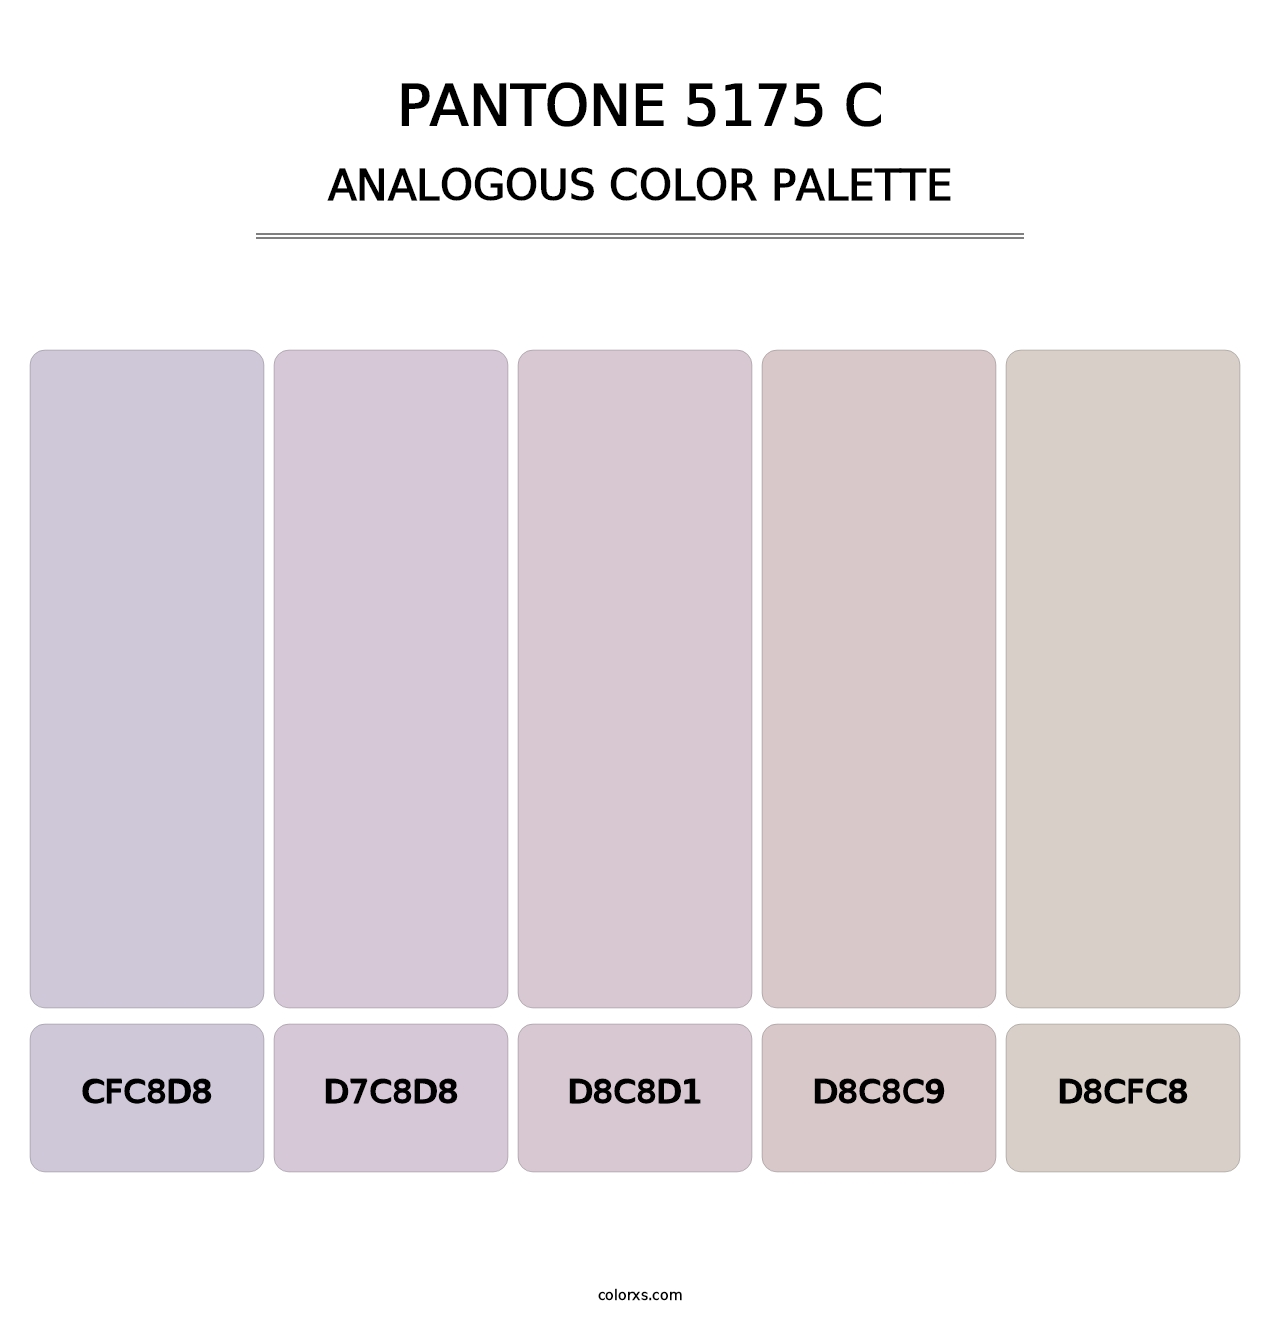 PANTONE 5175 C - Analogous Color Palette